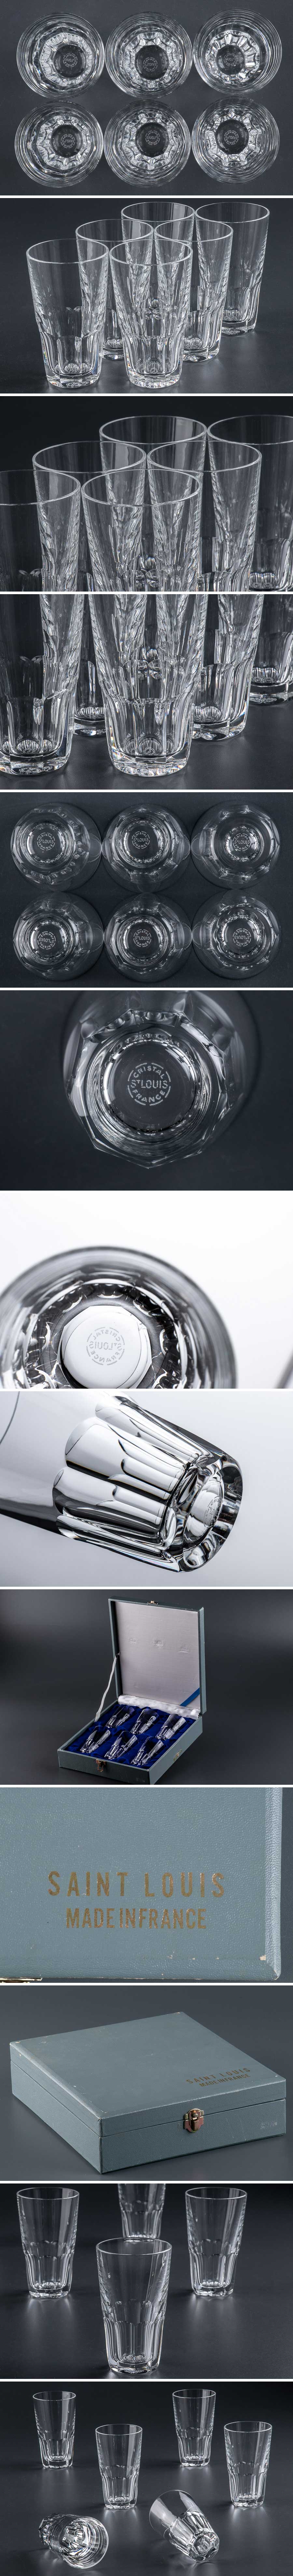 メリット『 Saint-Louis サンルイ クリスタル カットガラス タンブラー グラス 6客 フランス 箱付 9357 』 洋食器 テーブルウェア ブランド クリスタルガラス